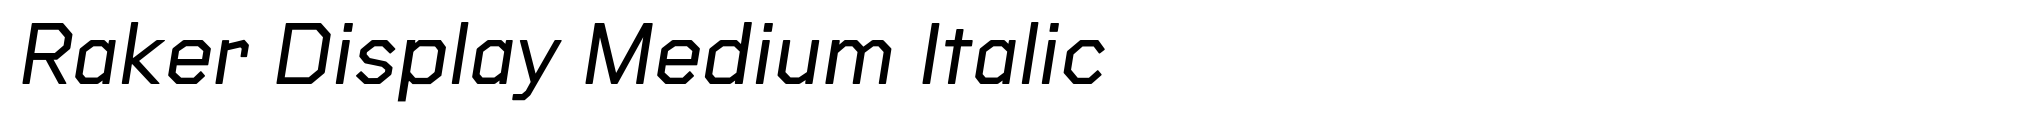 Raker Display Medium Italic image